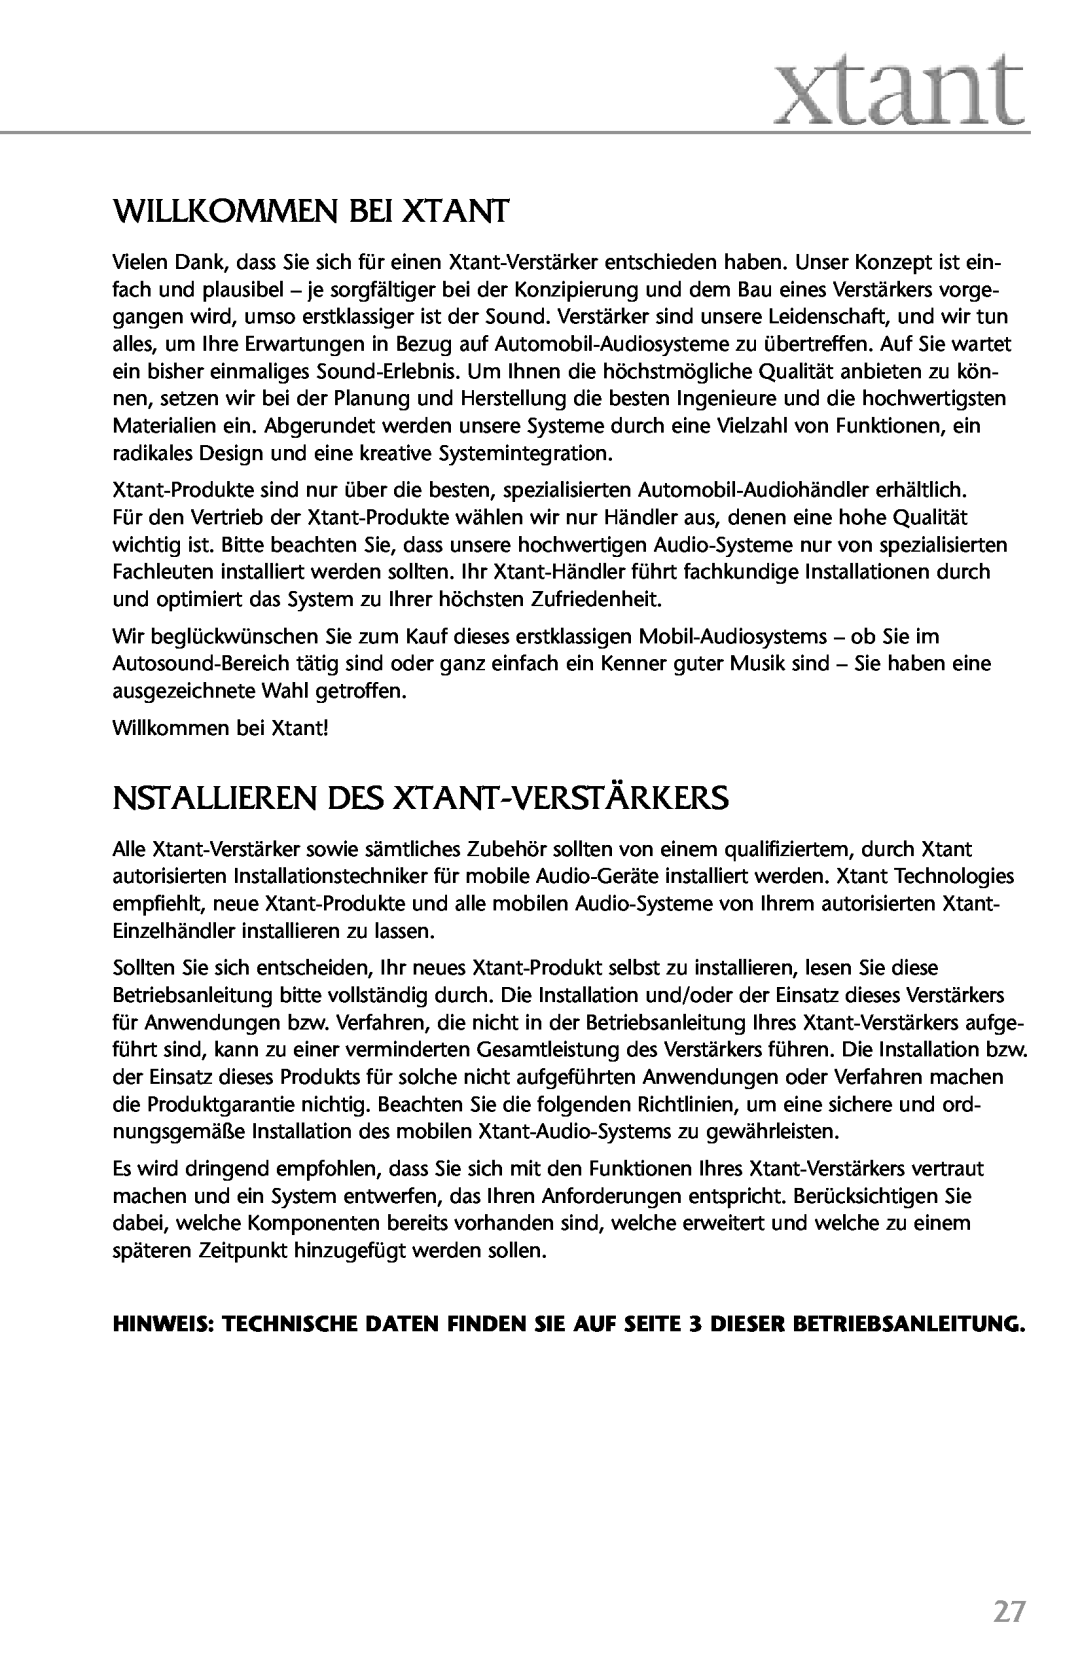 Xtant 4.4, 2.2 owner manual Willkommen Bei Xtant, Nstallieren Des Xtant-Verstärkers 